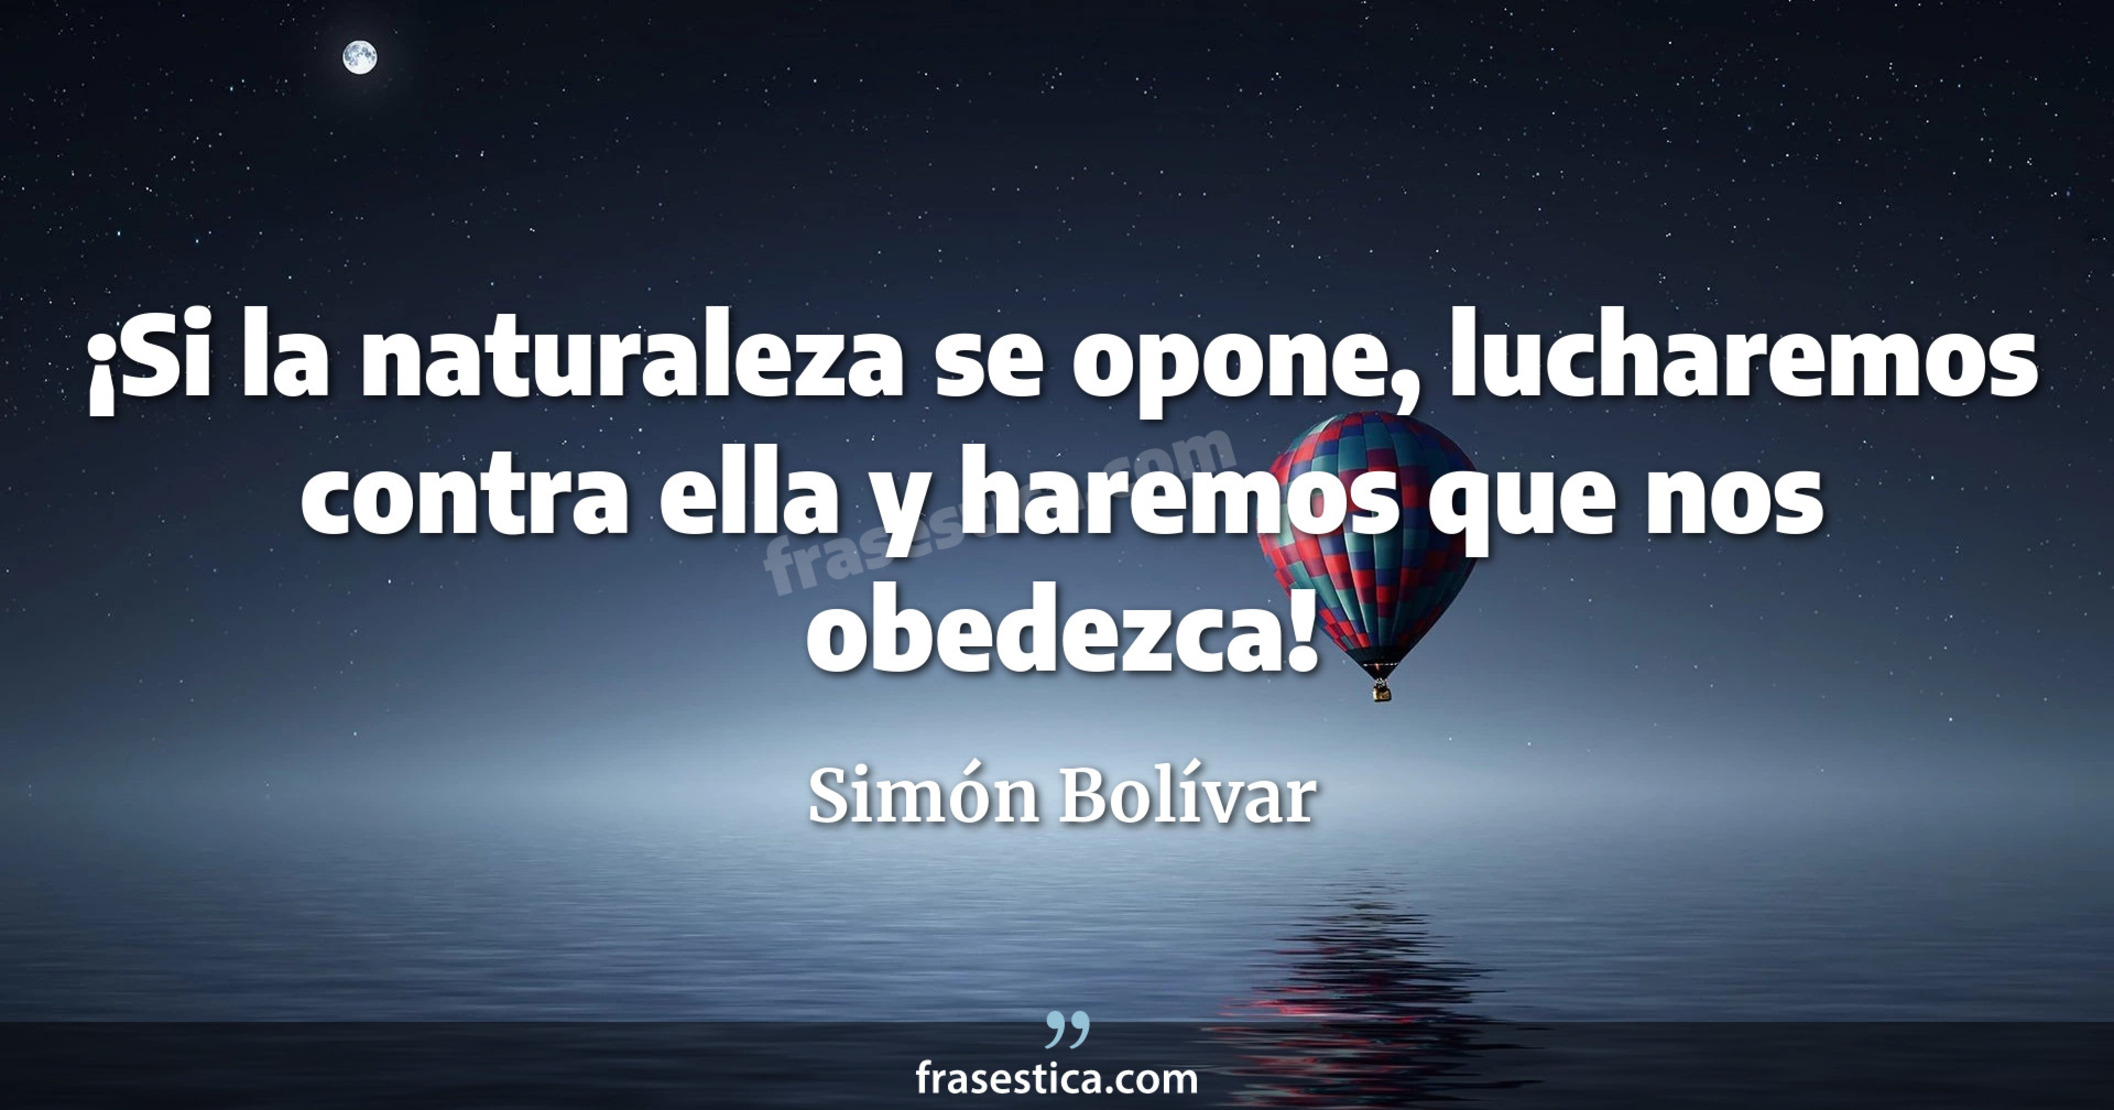 ¡Si la naturaleza se opone, lucharemos contra ella y haremos que nos obedezca! - Simón Bolívar